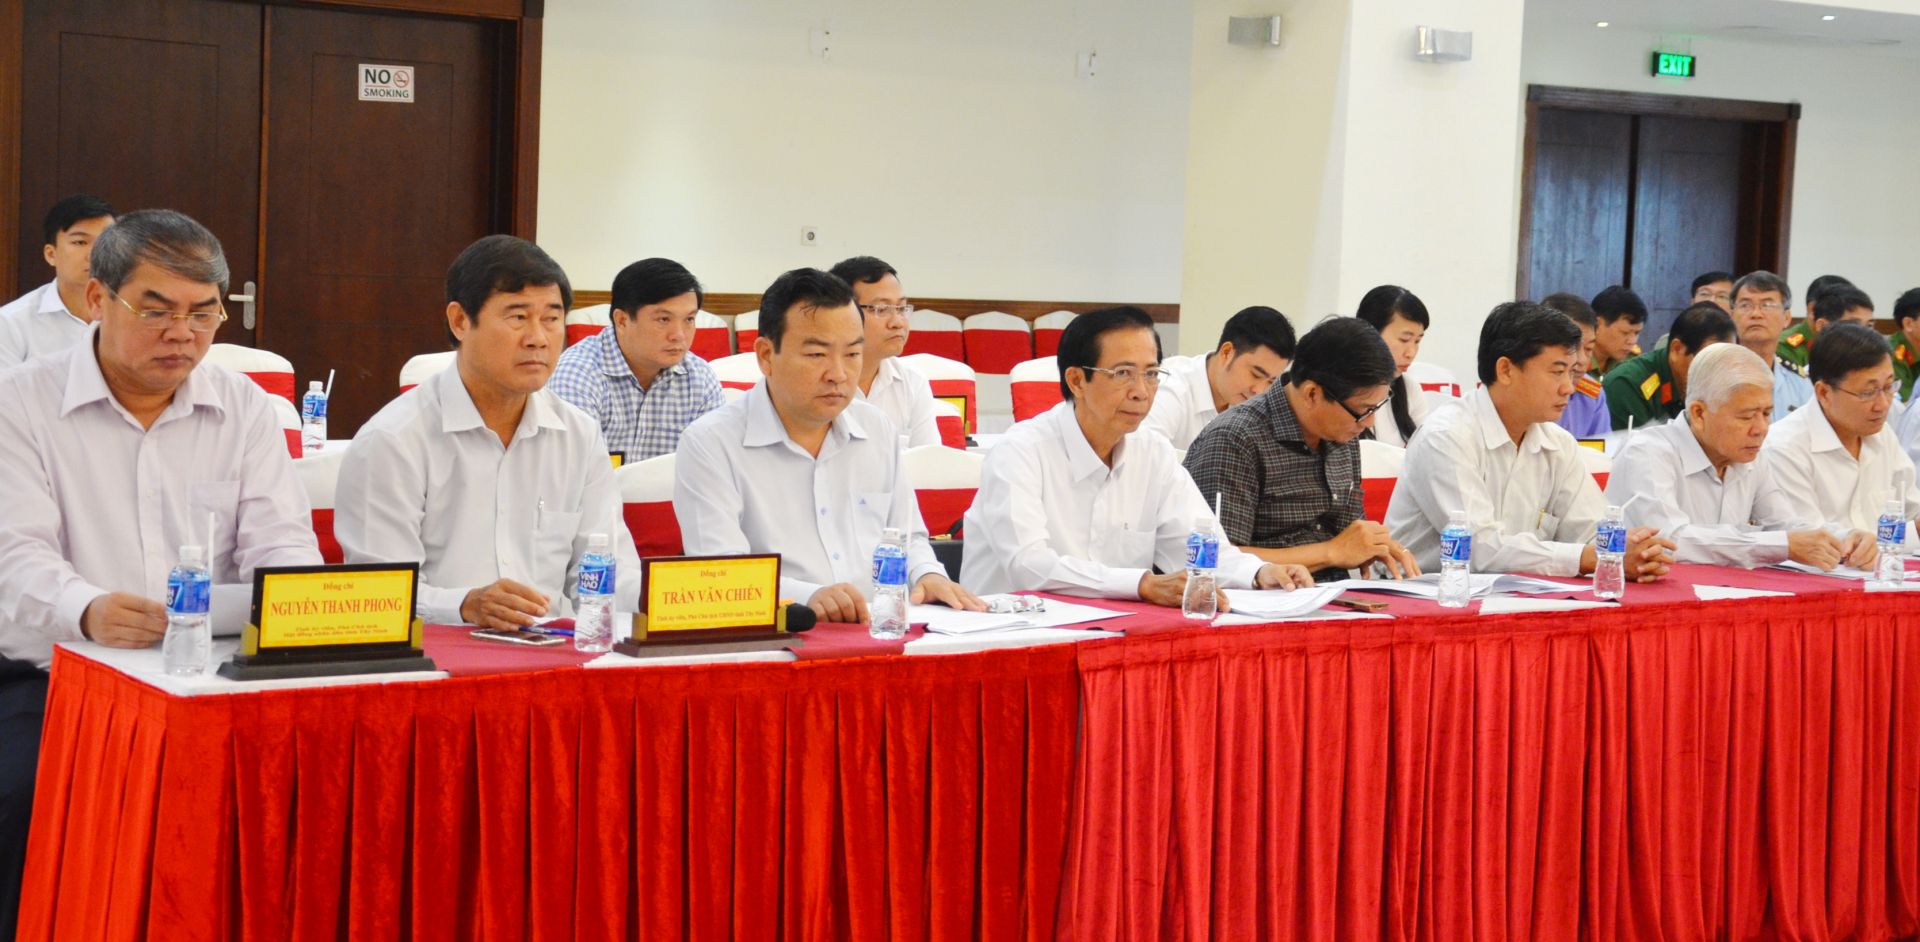 Lãnh đạo tỉnh Tây Ninh tham dự Hội nghị giao ban công tác nội chính các tỉnh, thành phố khu vực phía Nam tổ chức tại tỉnh Tây Ninh